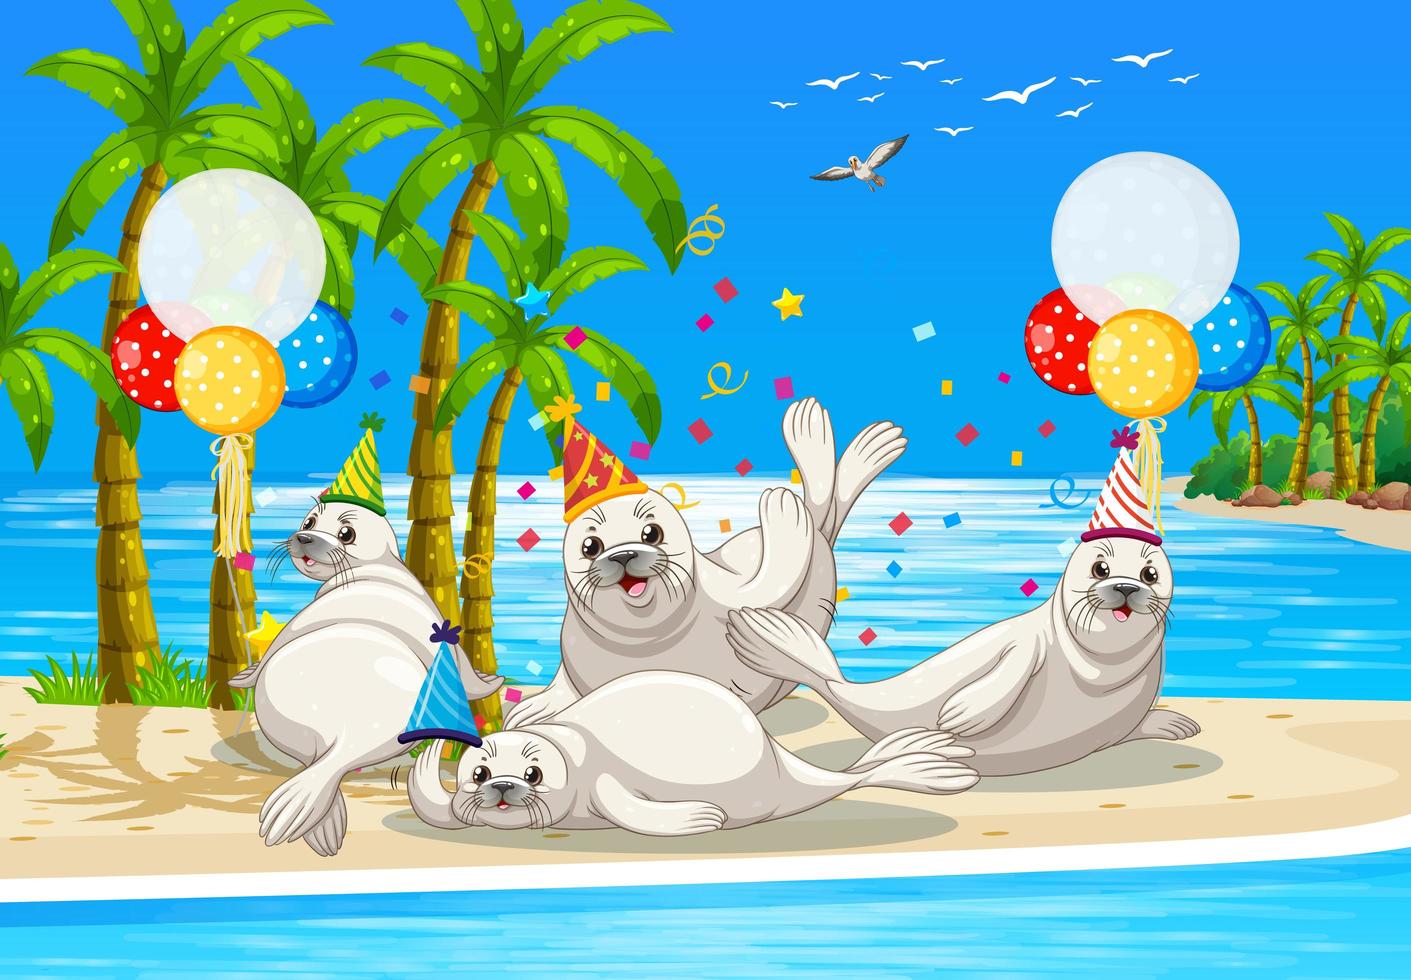 Siegelgruppe in der Partythema-Zeichentrickfigur auf Strandhintergrund vektor